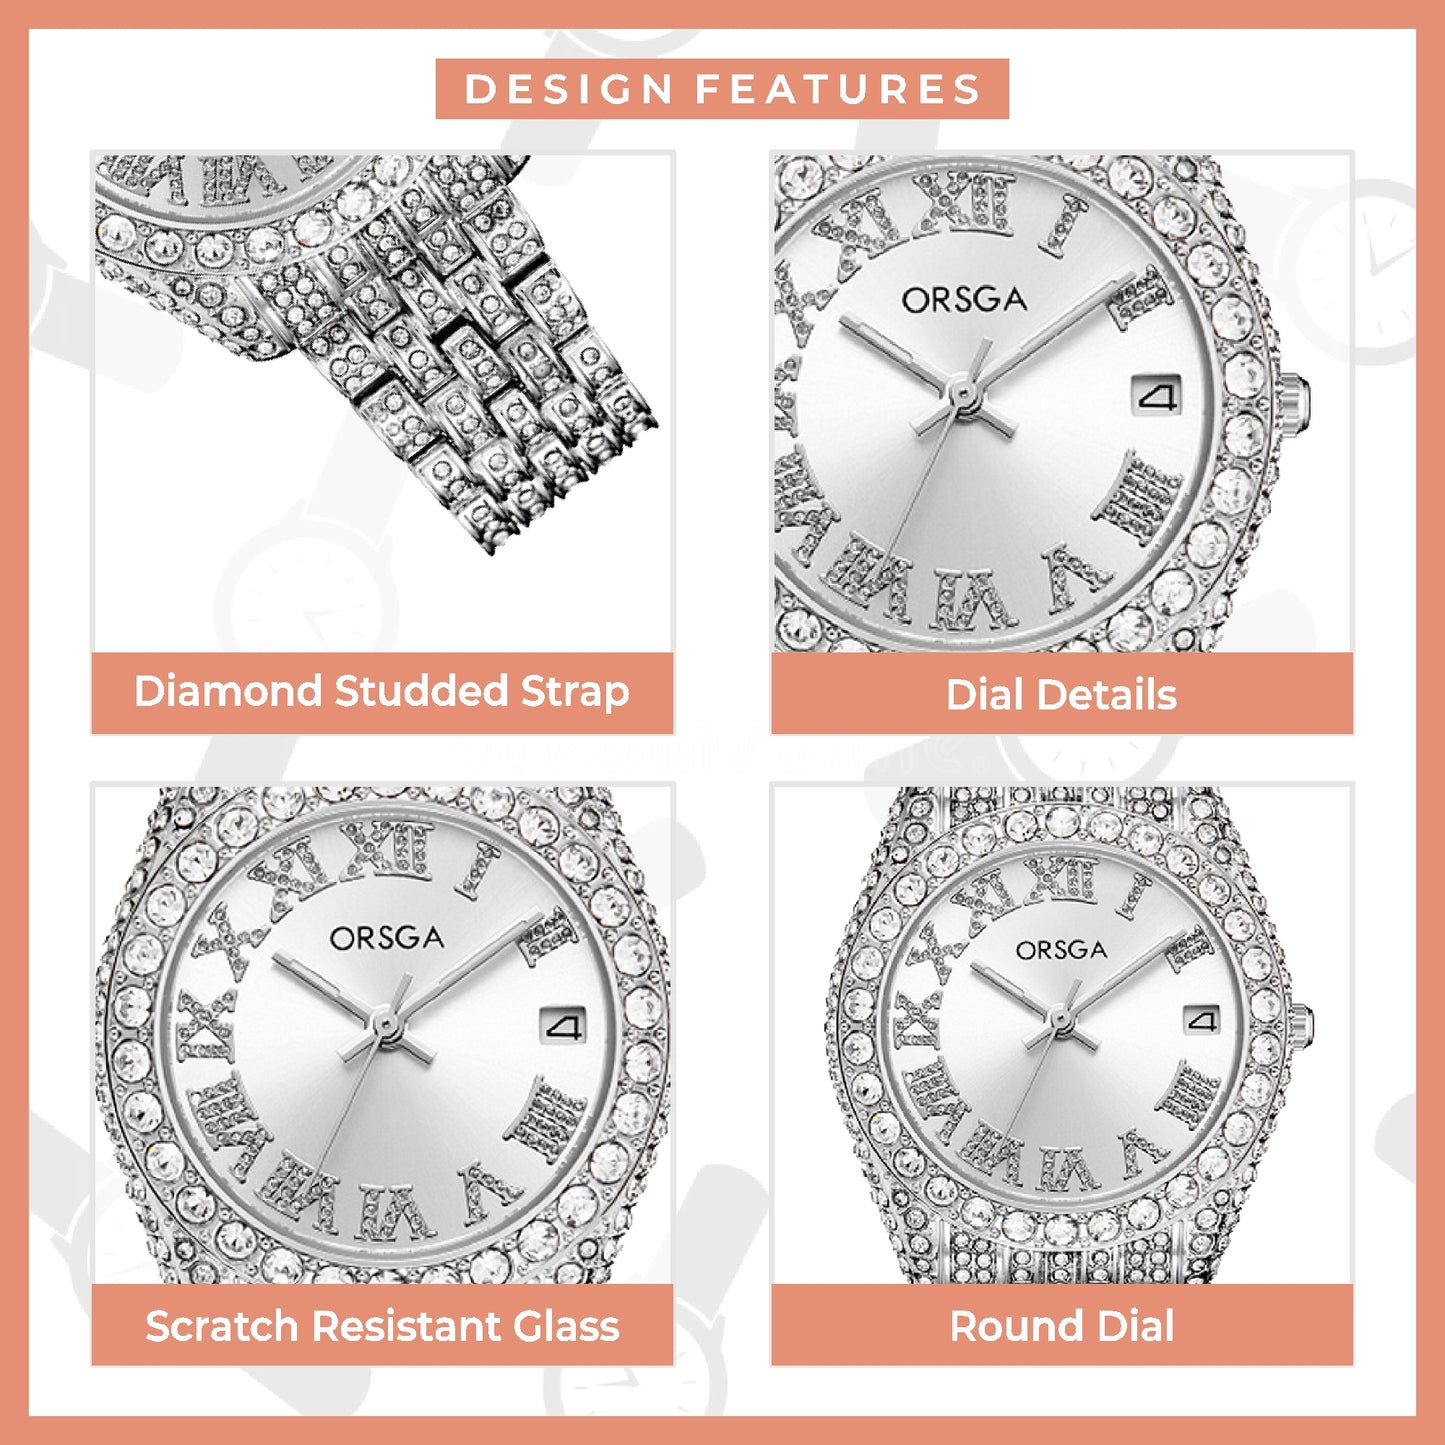 ORSGA Ornate White Dial Full Studded Silver Watch